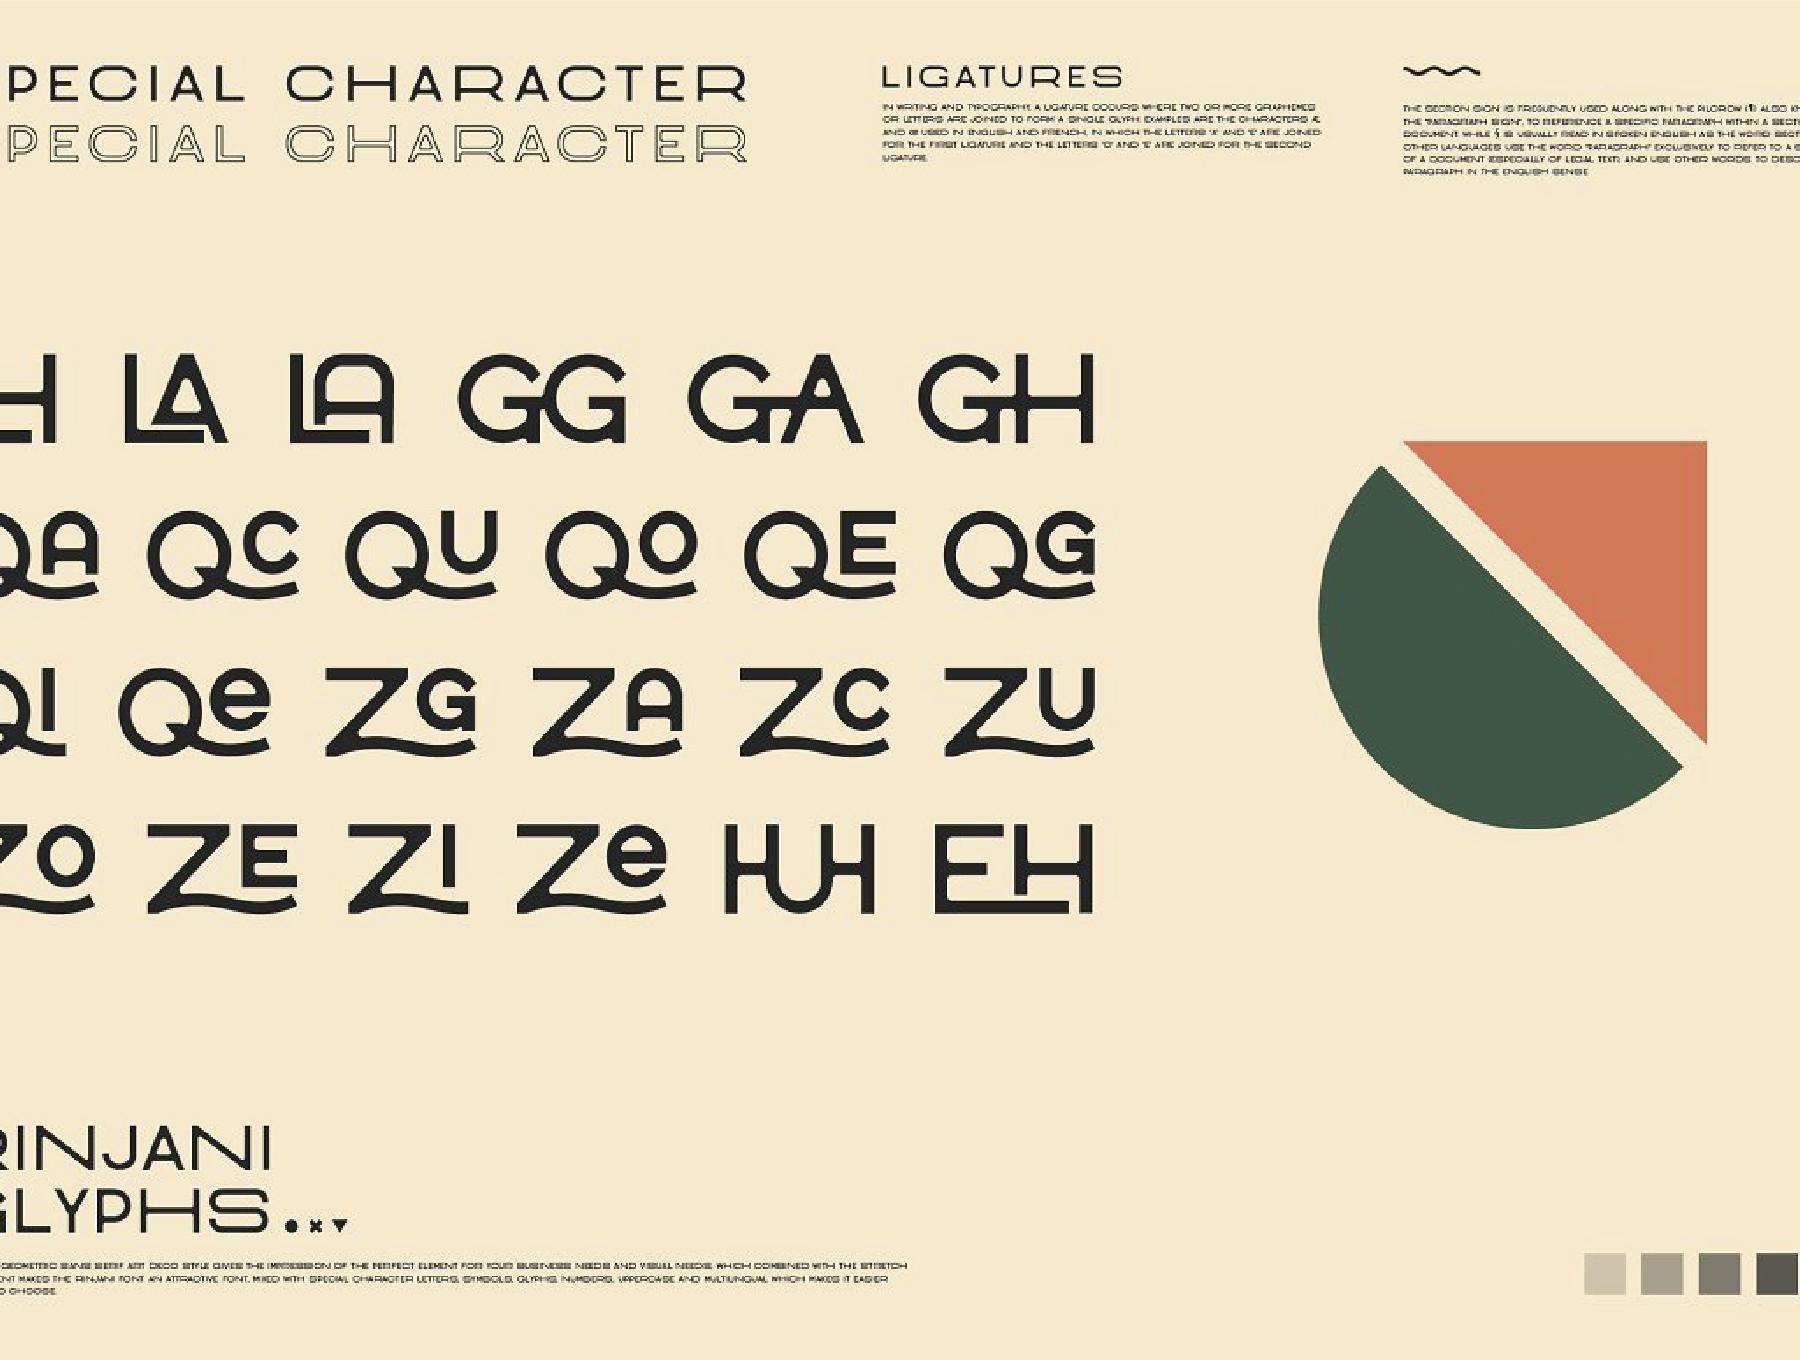 64 复古艺术装饰未来宽体拉伸排版设计无衬线英文字体 Rinjani Sans – Wide Stretch Typeface 64